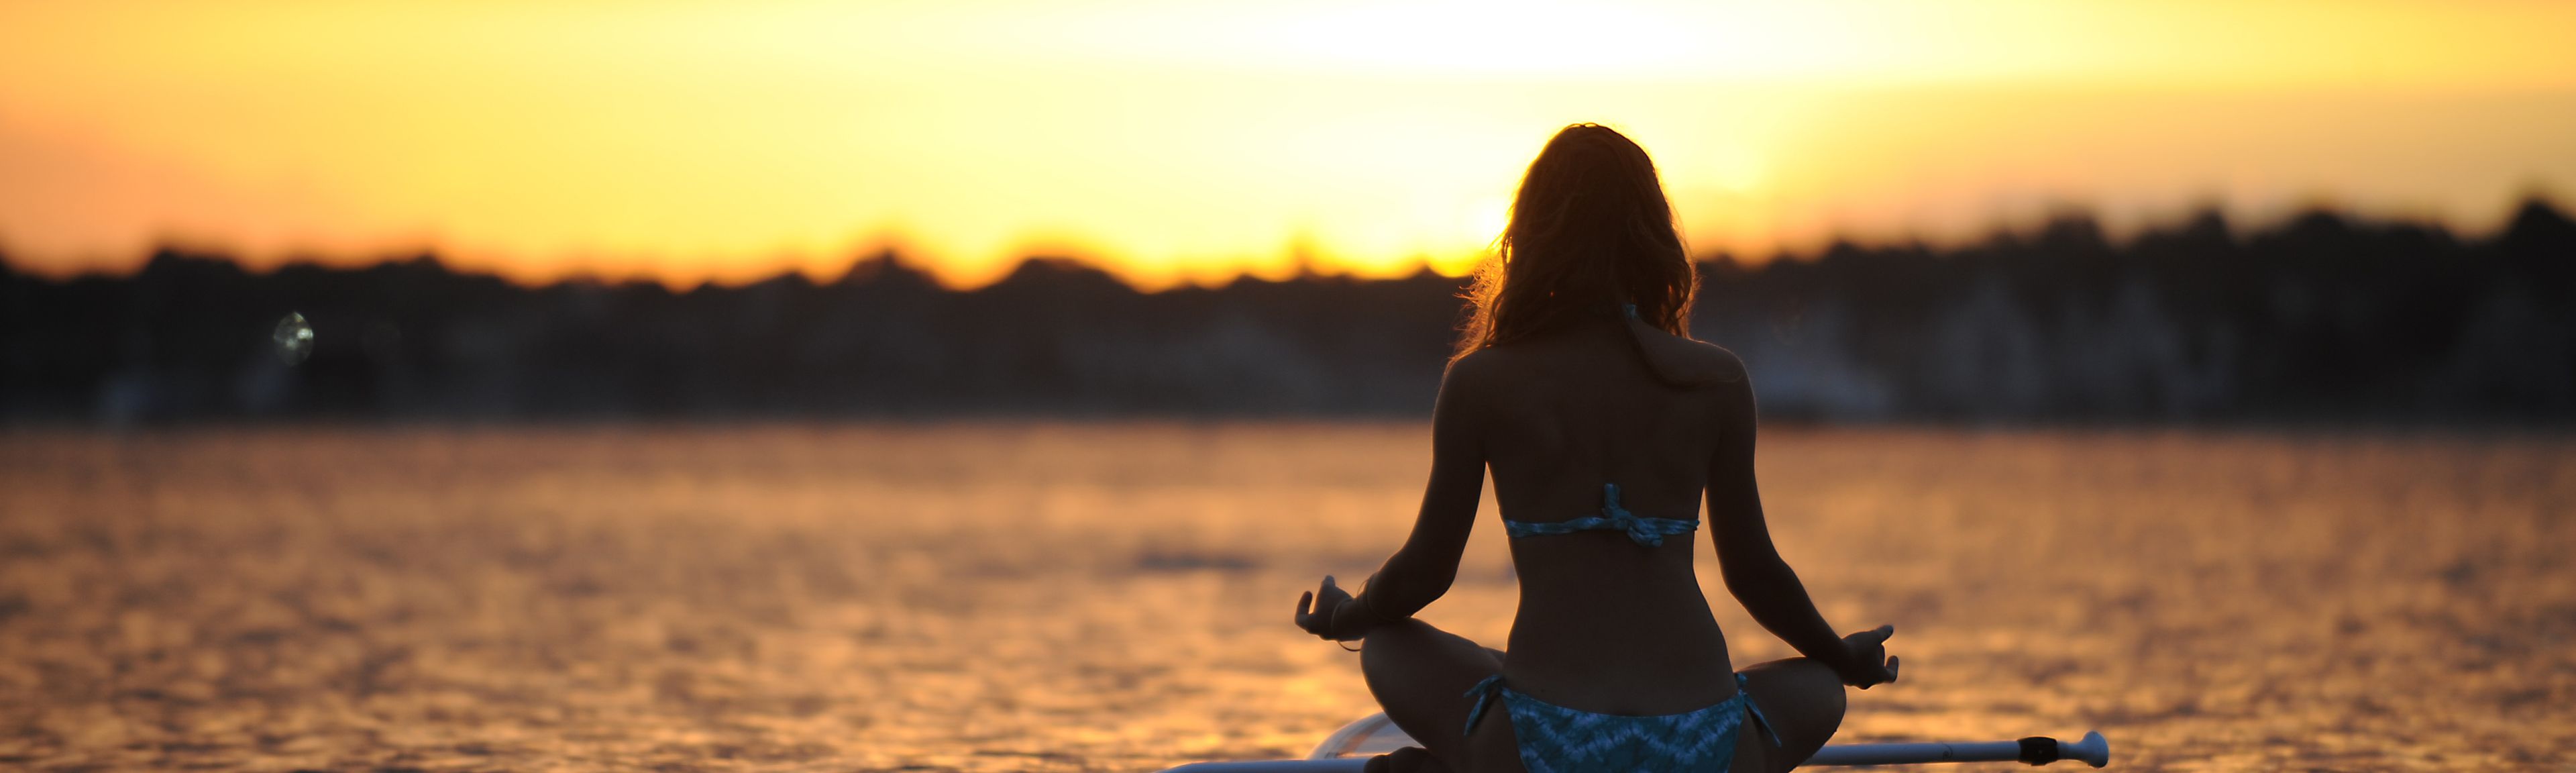 Frau auf dem Surfbrett sitzend auf dem See bei Sonnenuntergang